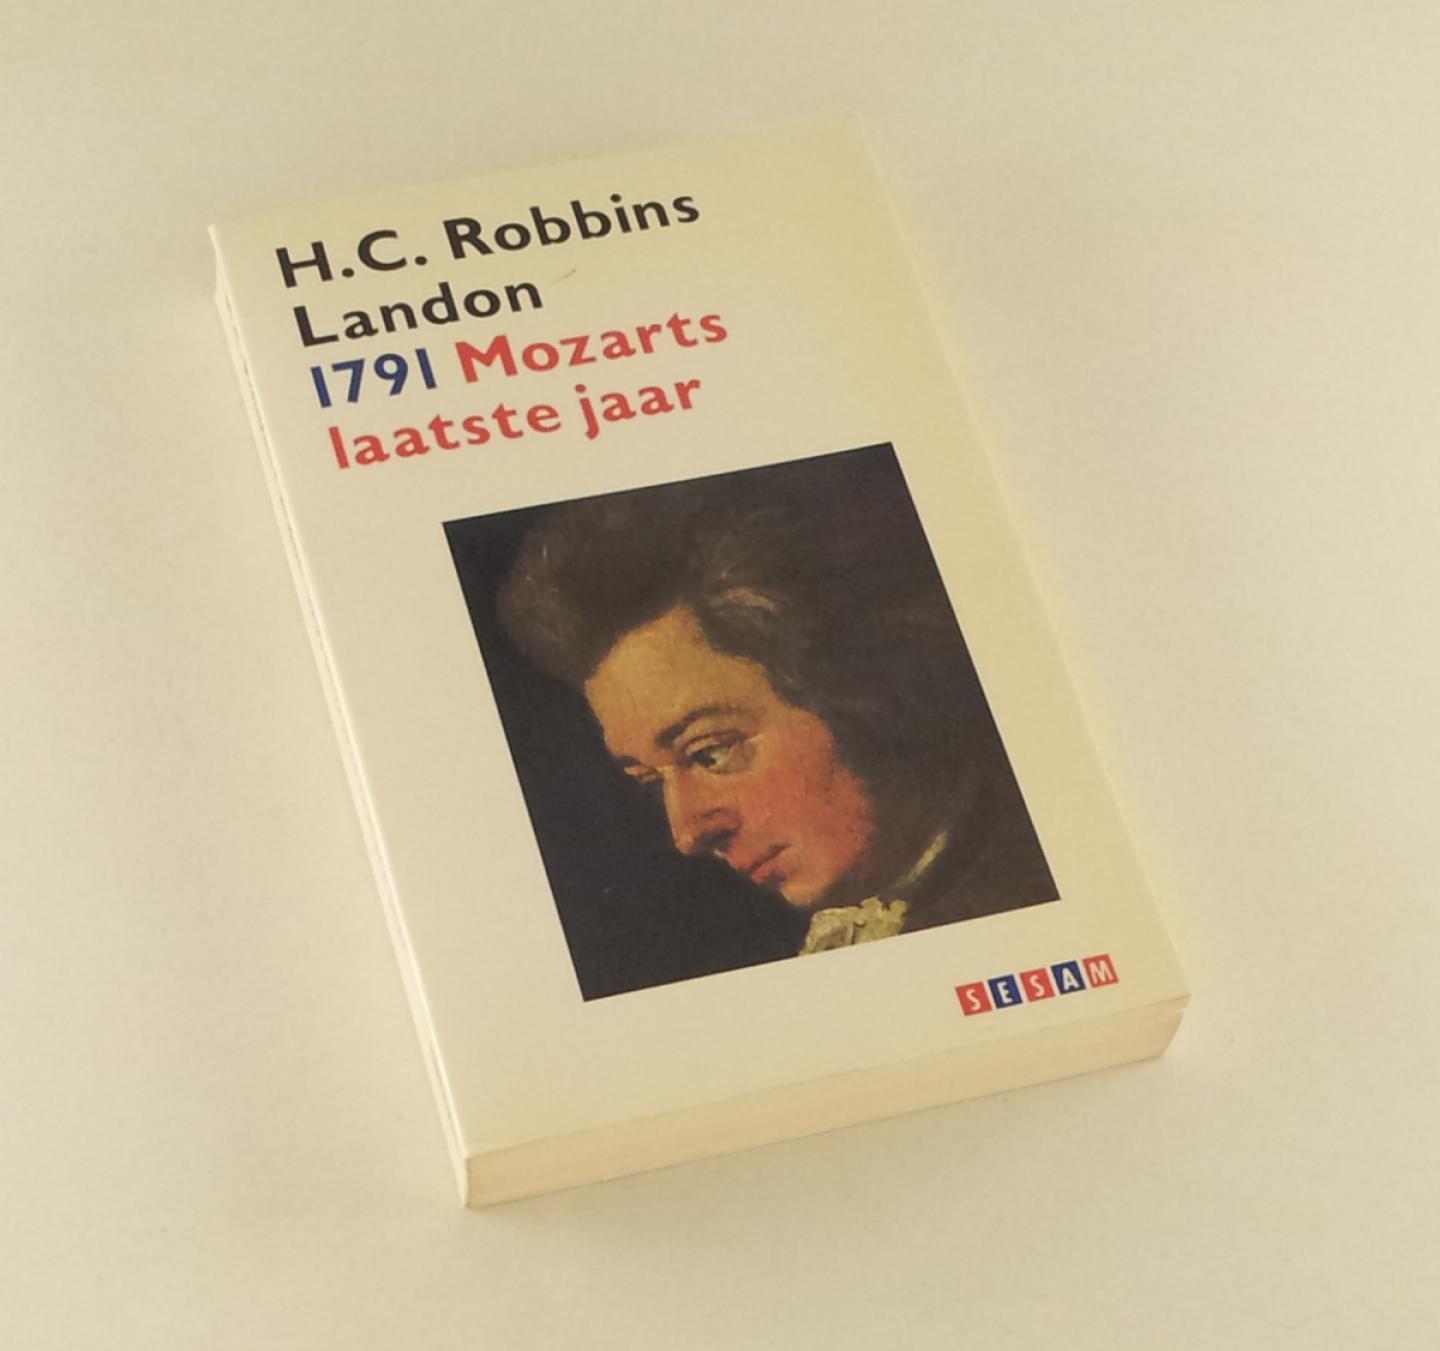 Landon, H.C.Robbins - 1791 Mozarts laatste jaar